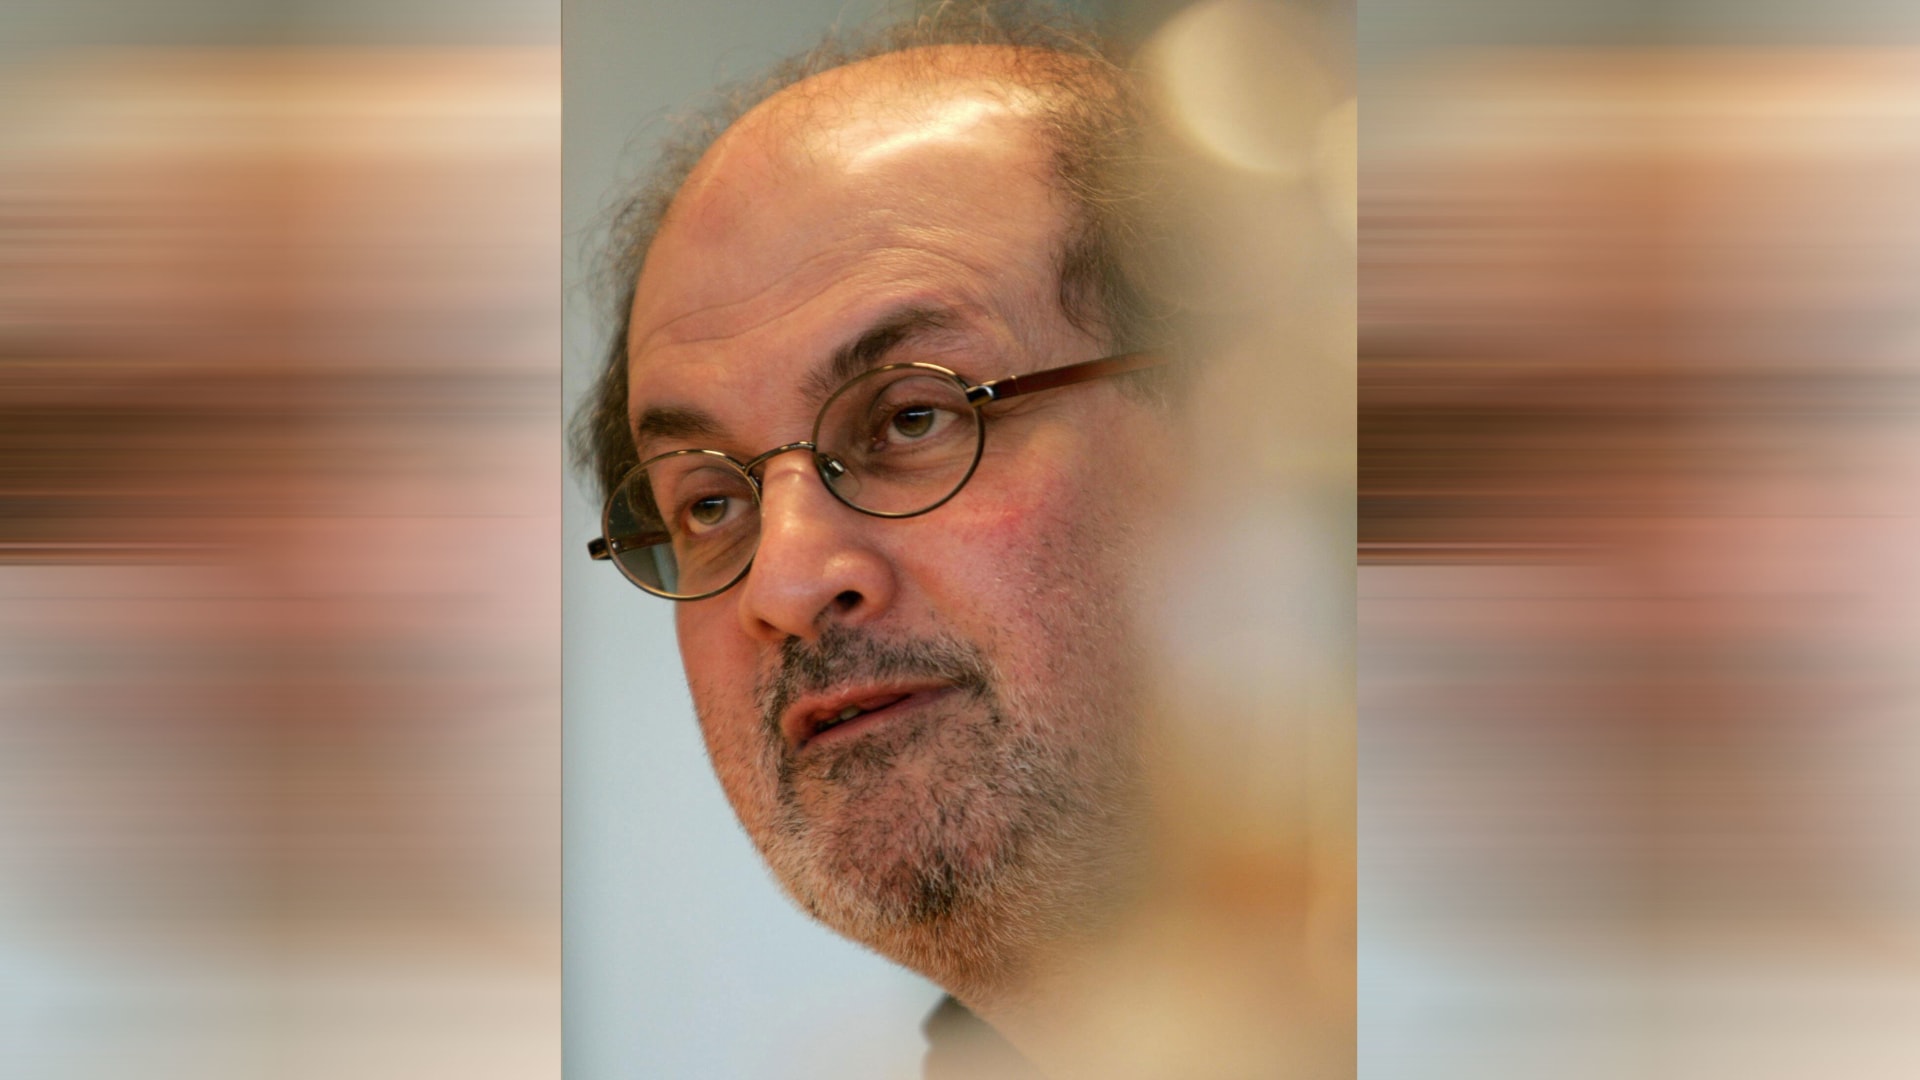 تعرض لـ”7 إلى 10 طعنات”.. كل ما نعرفه عن الهجوم على سلمان رشدي وموقع الحادثة والأمن في المسرح